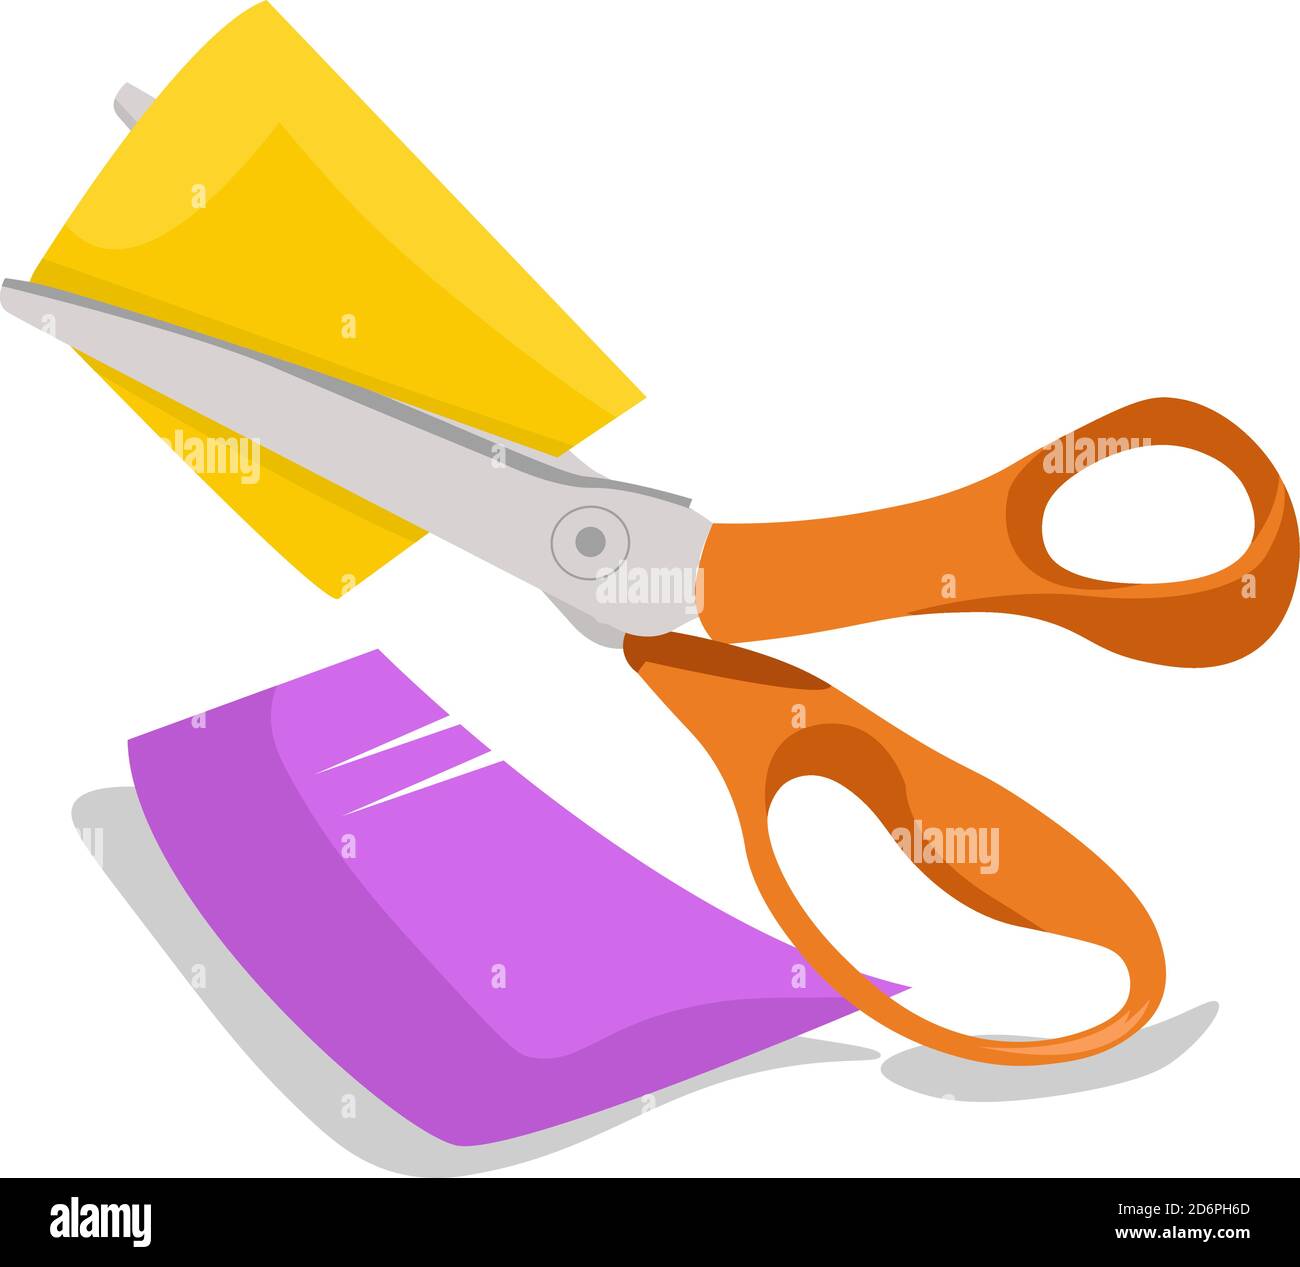 https://c8.alamy.com/comp/2D6PH6D/orange-scissors-illustration-vector-on-white-background-2D6PH6D.jpg